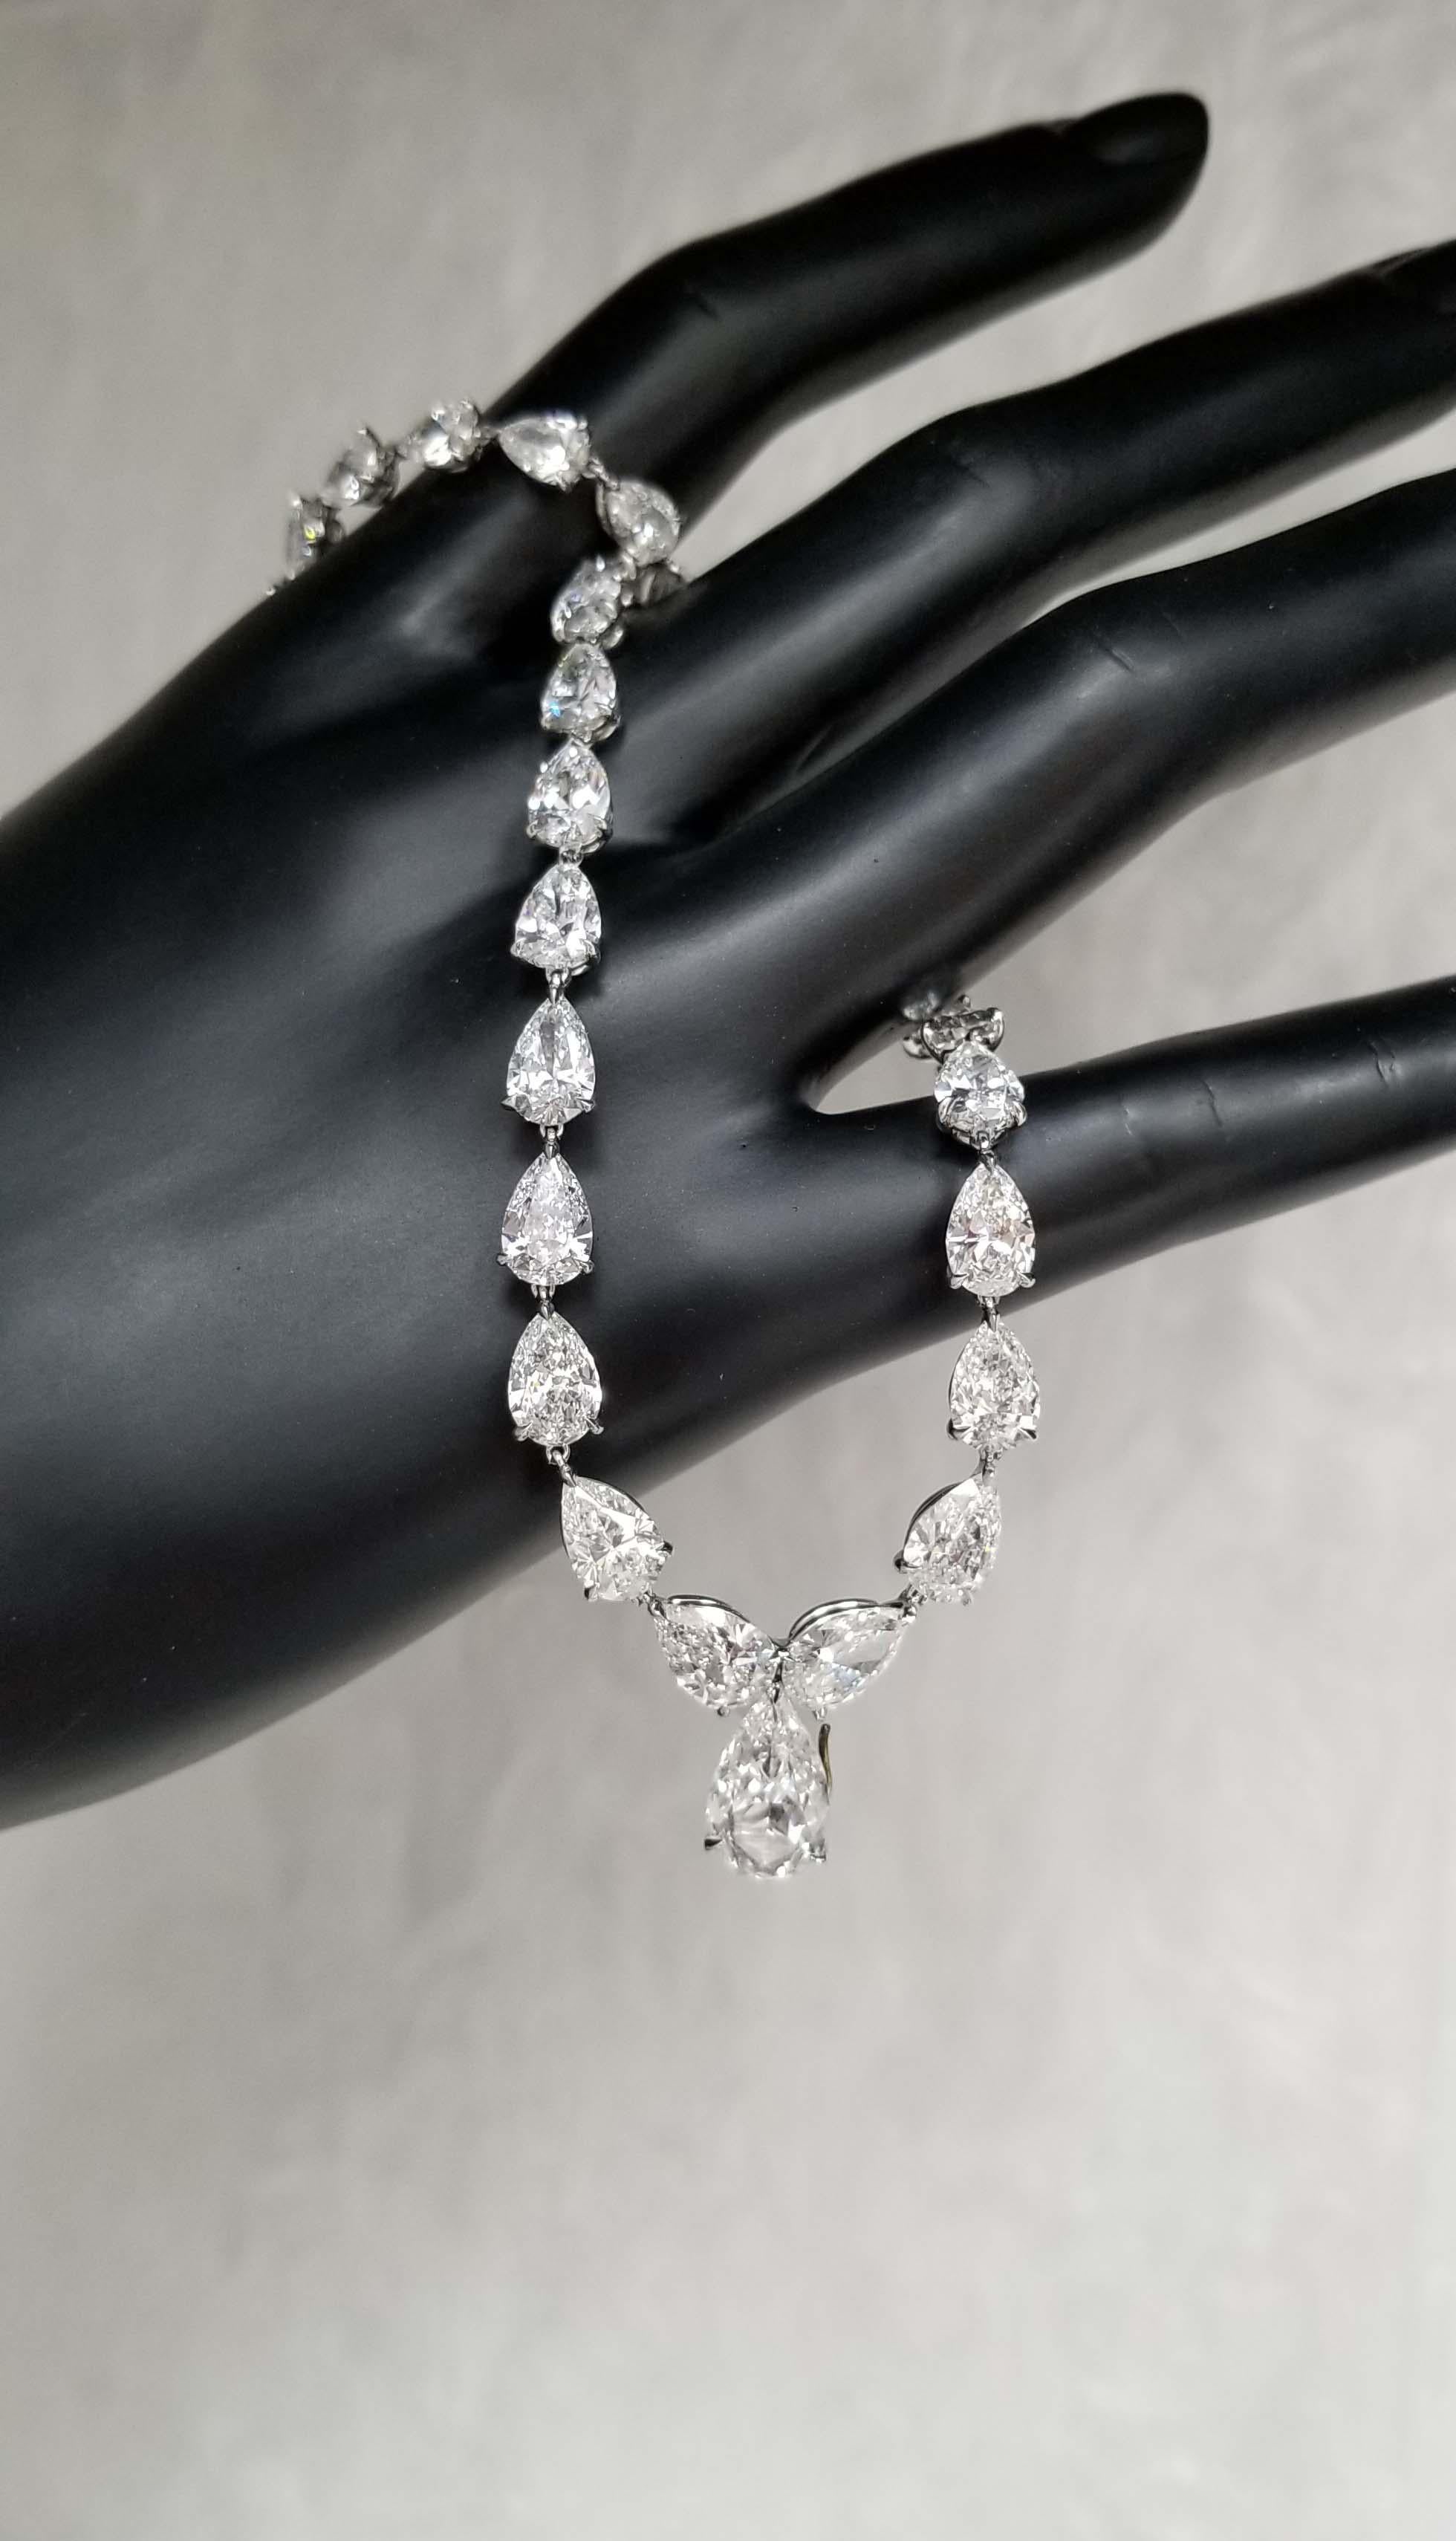 Scarselli bietet diese bezaubernde Tennis-Halskette aus Platin mit 31,27 Karat Diamanten im Birnenschliff. Jeder Diamant ist GIA-zertifiziert, insgesamt 45 Diamanten im Birnenschliff, von 0,35 ct bis 2,08 ct der größte, Farbe D-E-F (ein Diamant